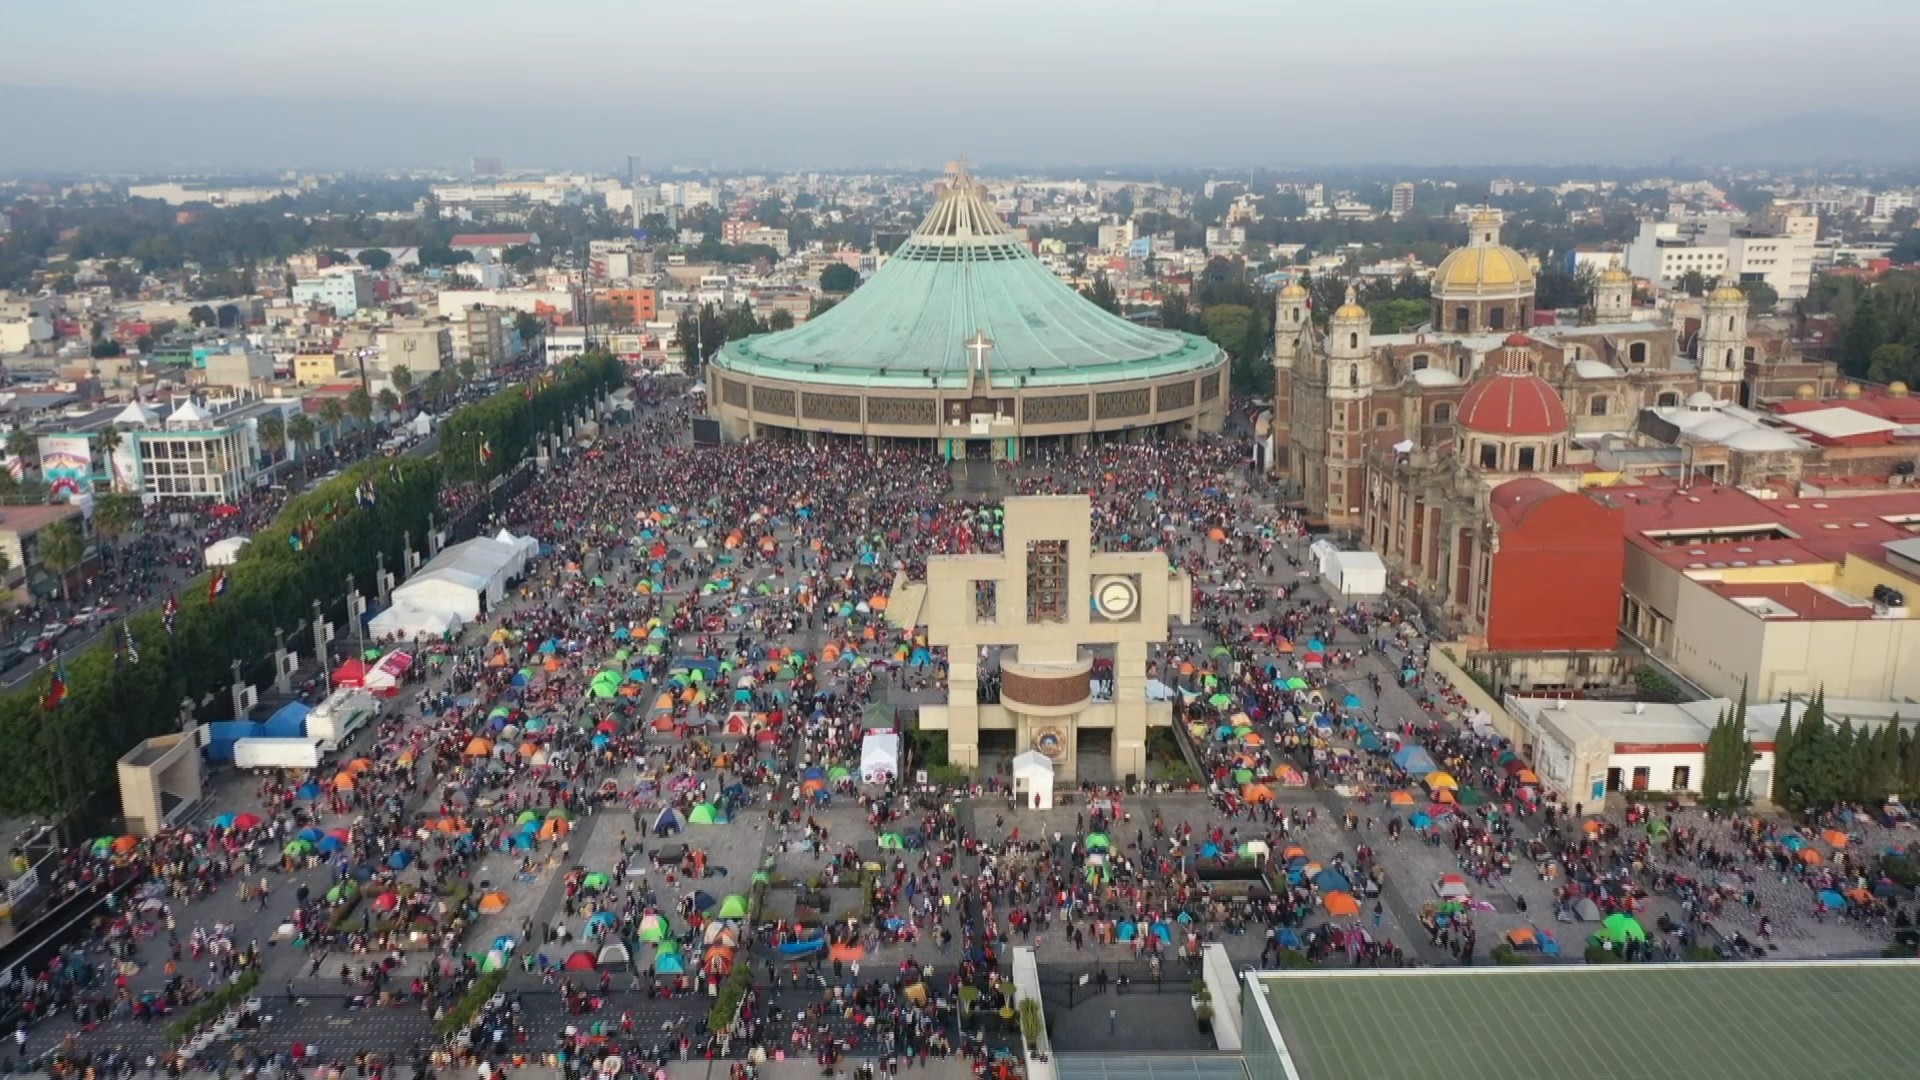 Cada 12 de diciembre peregrinan unas diez millones de personas a la Basílica de la Virgen de Guadalupe en la Ciudad de México 